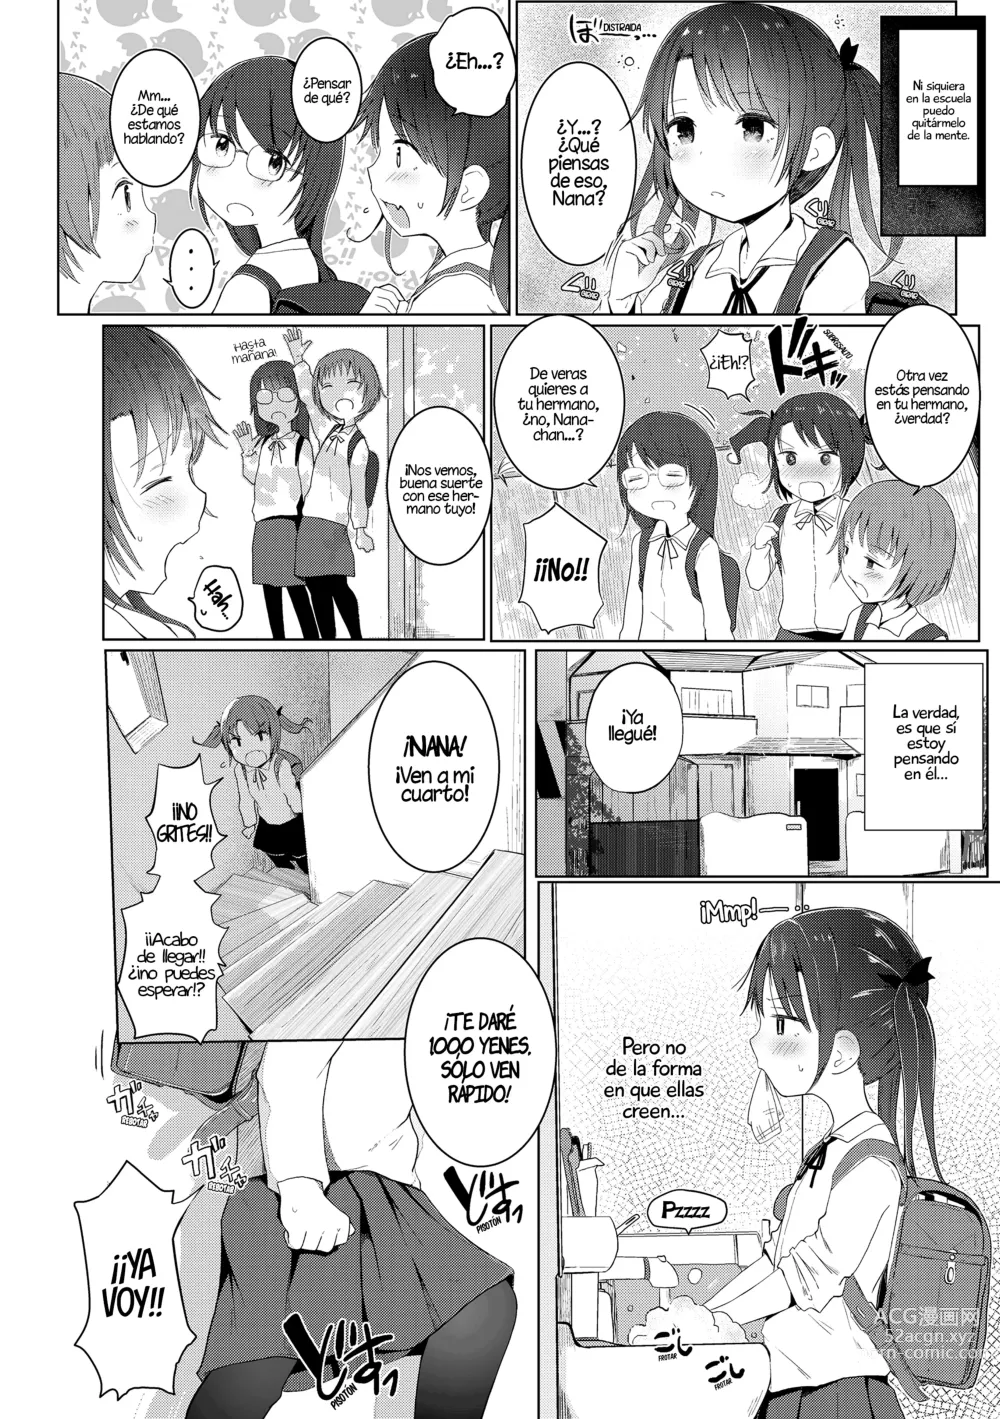 Page 2 of manga Con la ayuda de mi hermana